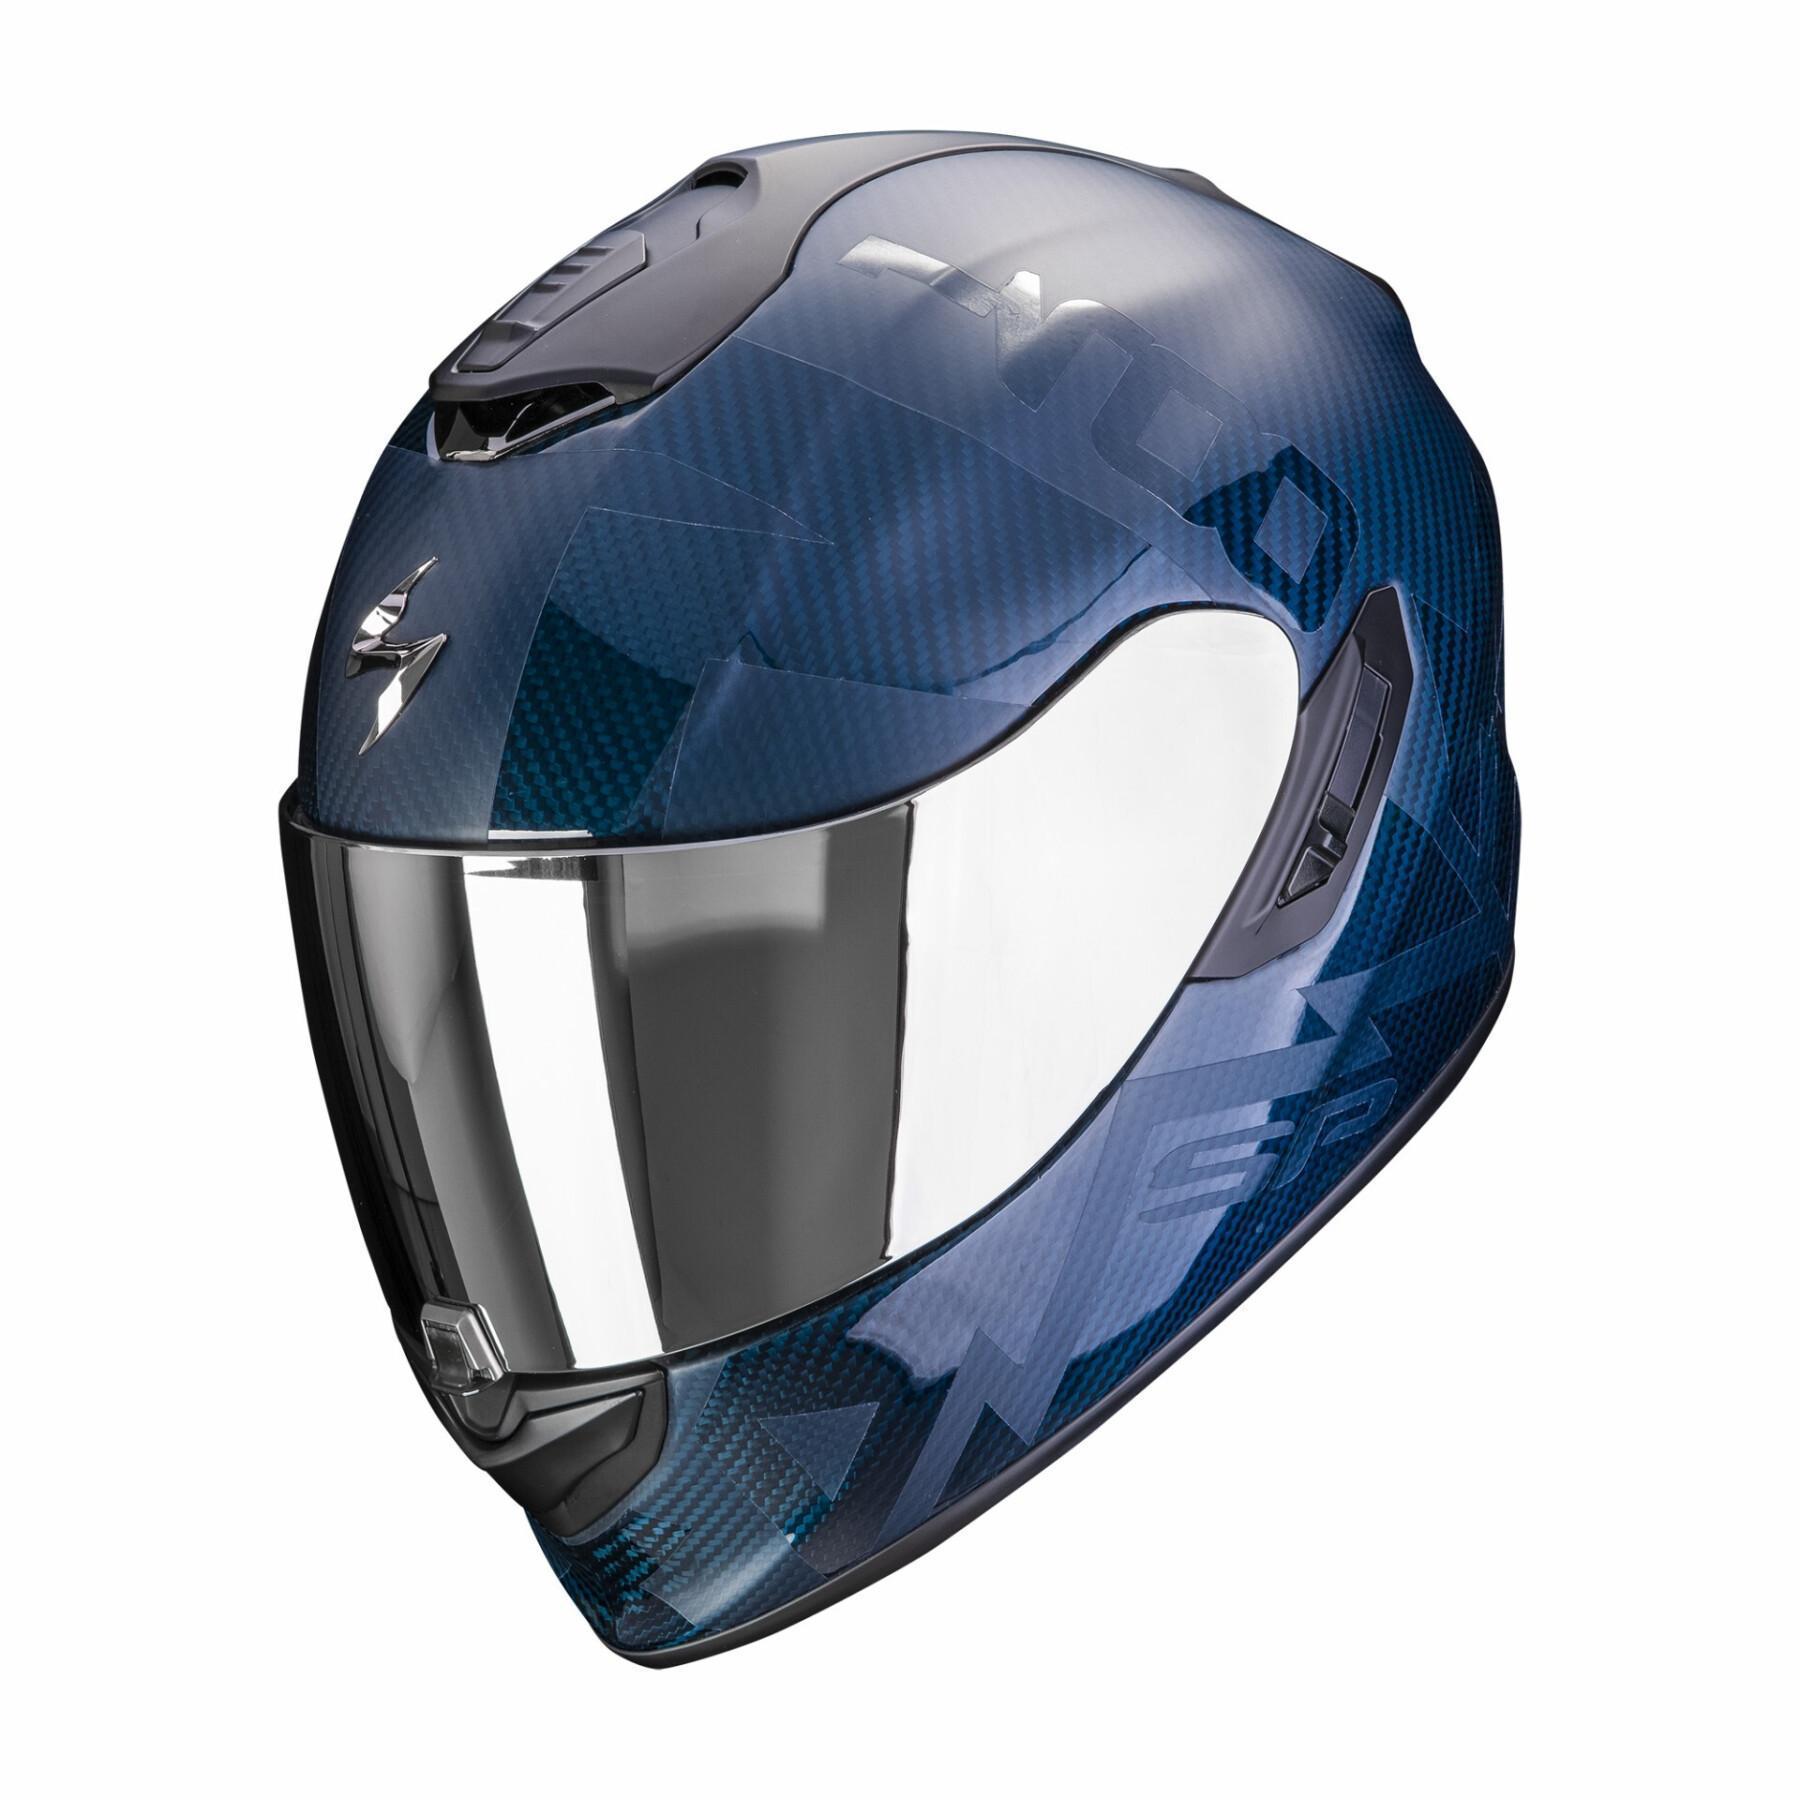 Casco integral de moto Scorpion Exo-1400 Evo Carbon Air Cerebro ECE 22-06